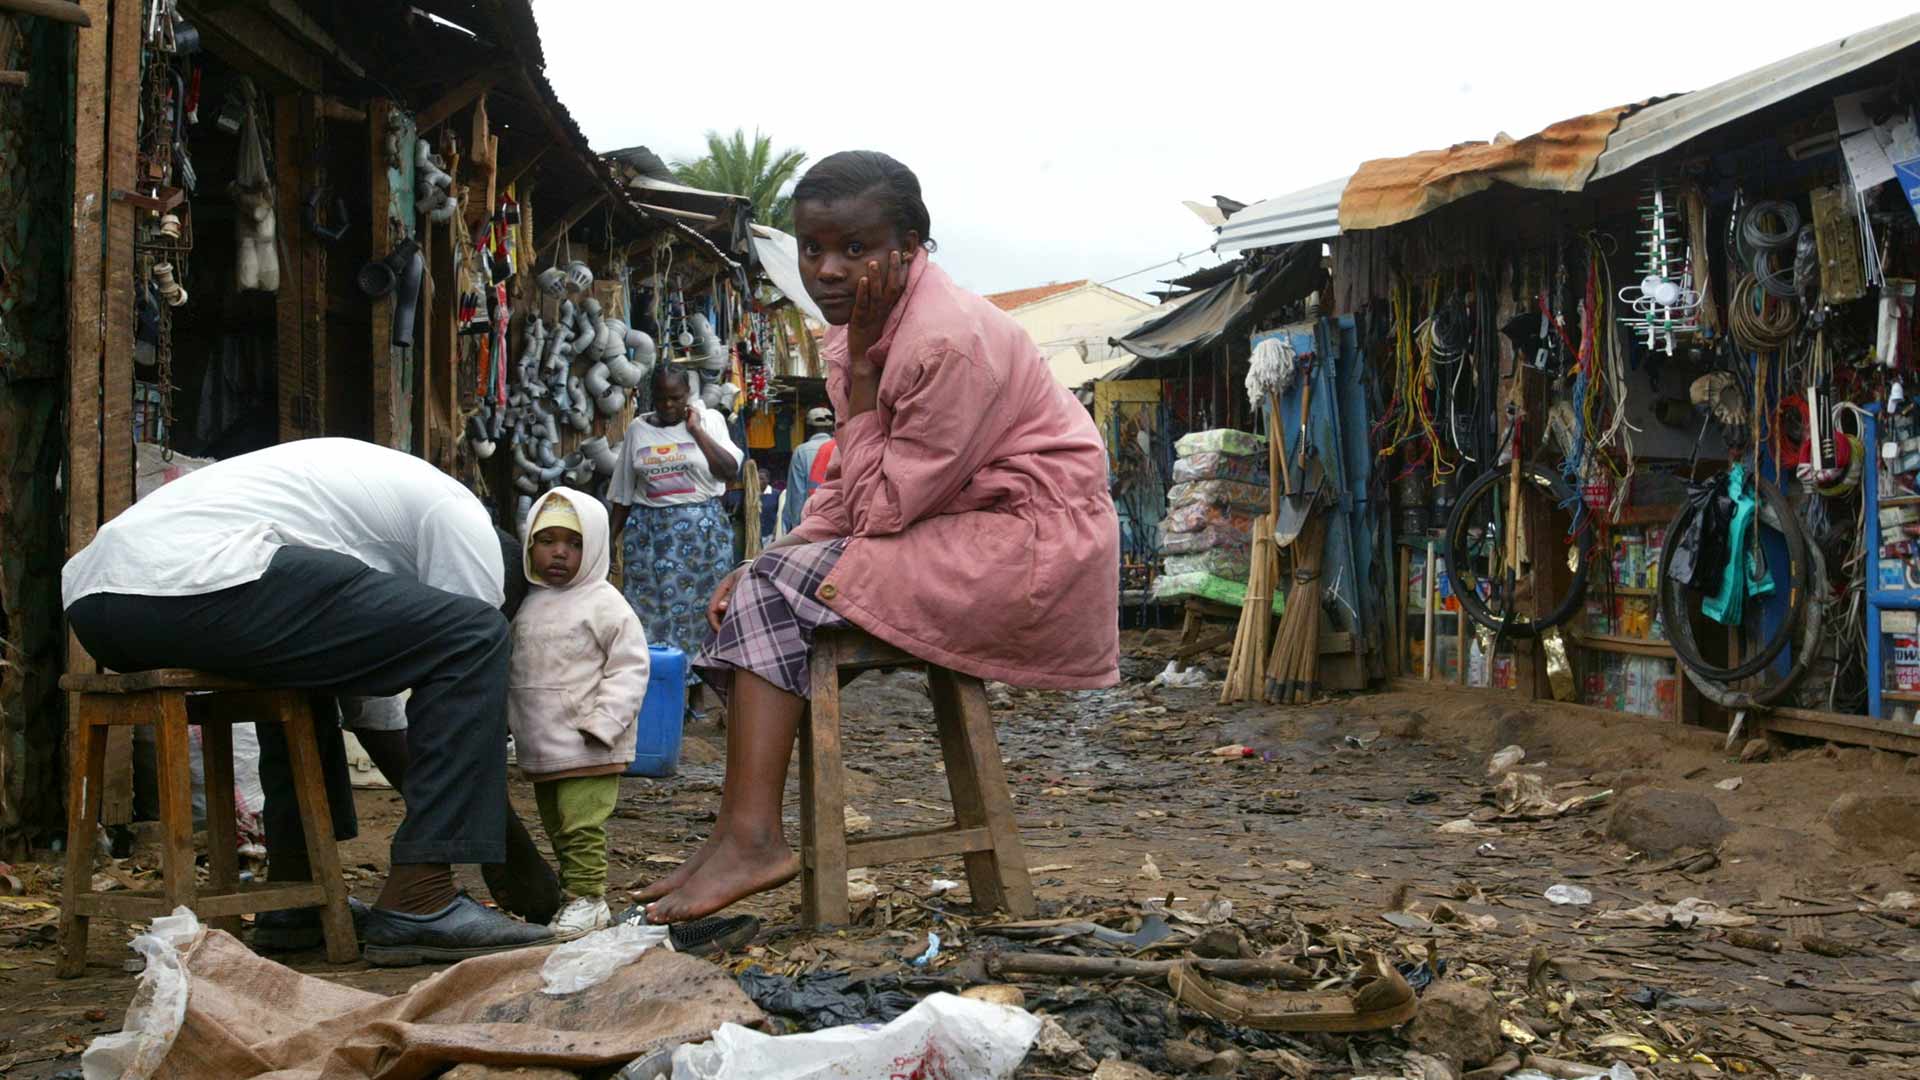 El primer Foro Mundial sobre Pobreza se realizará en el barrio marginal más grande de África